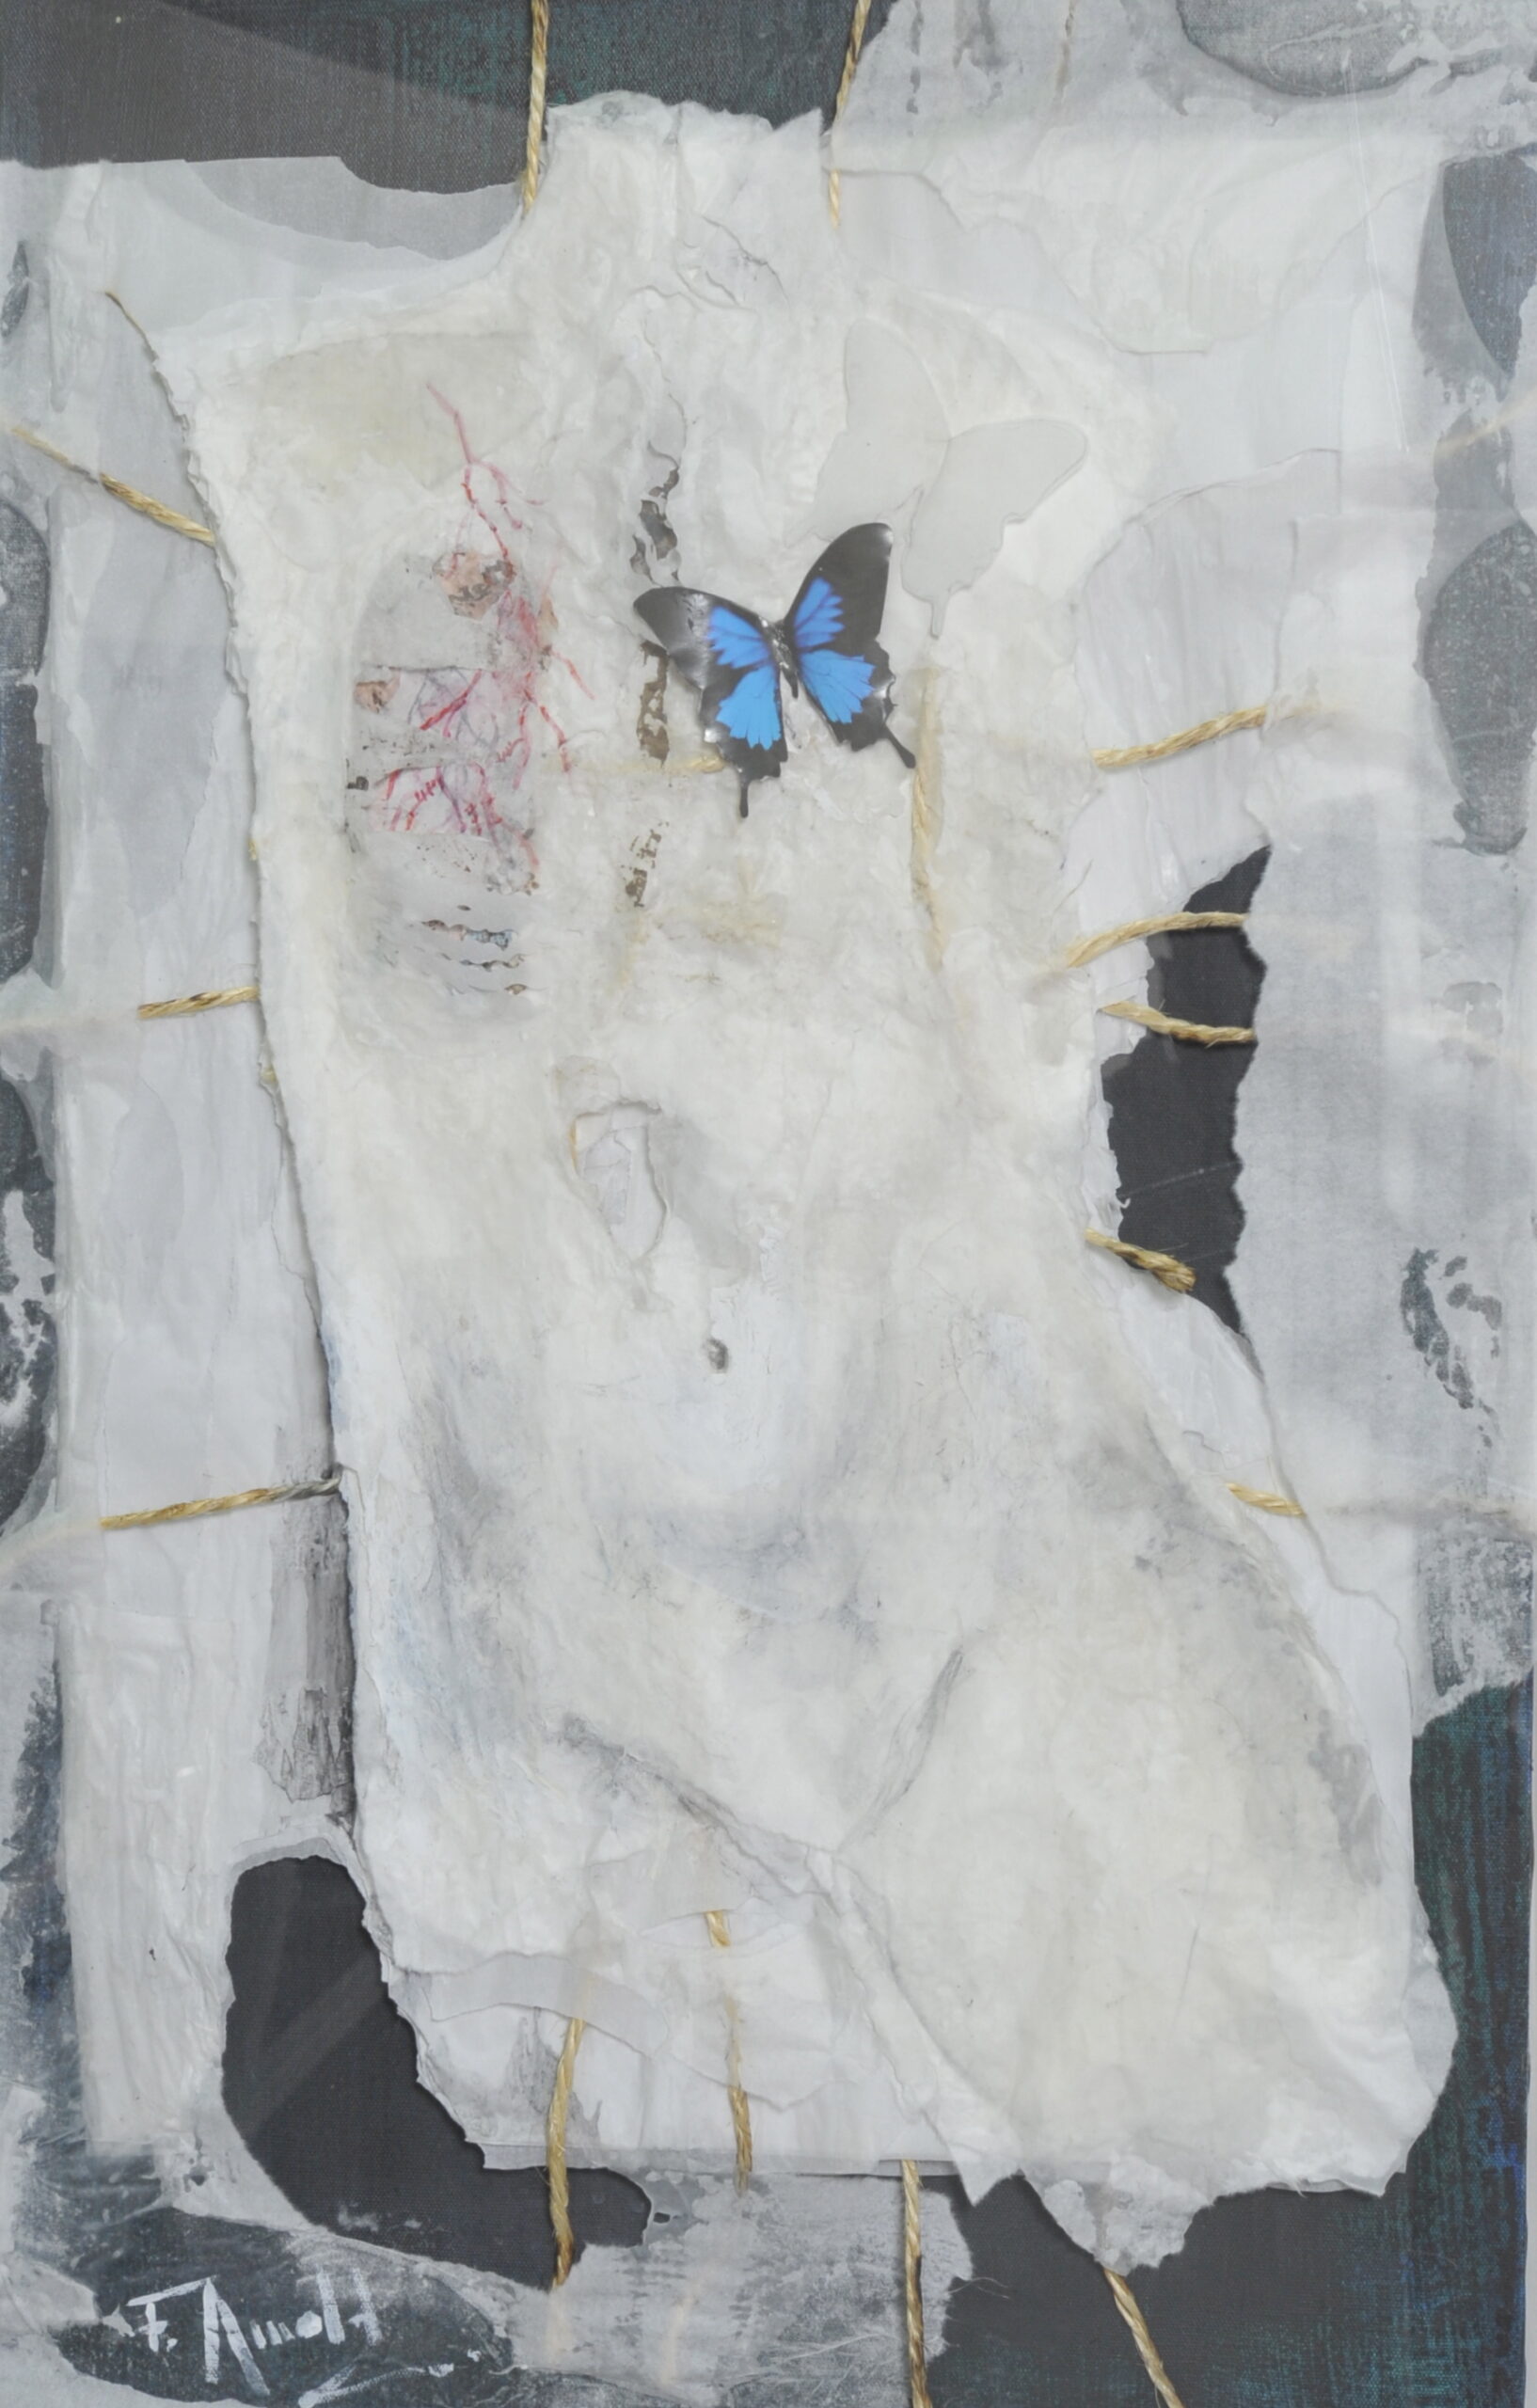 Florence Arnold, De la vie dans mes veines, millefeuille de papier, ficelle de lin, acrylique, 80 x 50 cm. Courtesy de l'artiste